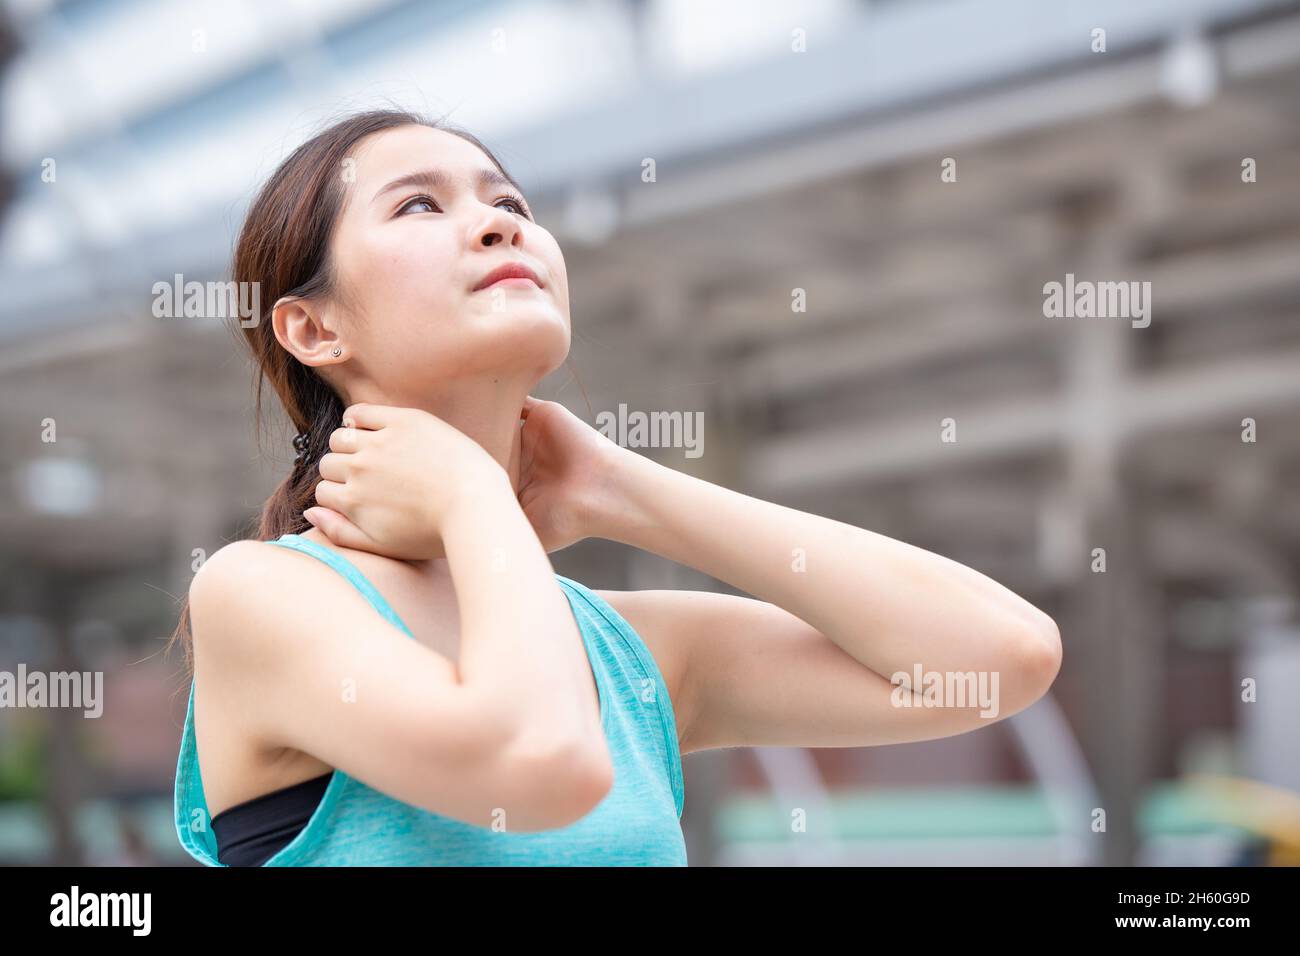 sport donne sane rilassano dolore muscolare del collo che allunga la testa verso l'alto Foto Stock